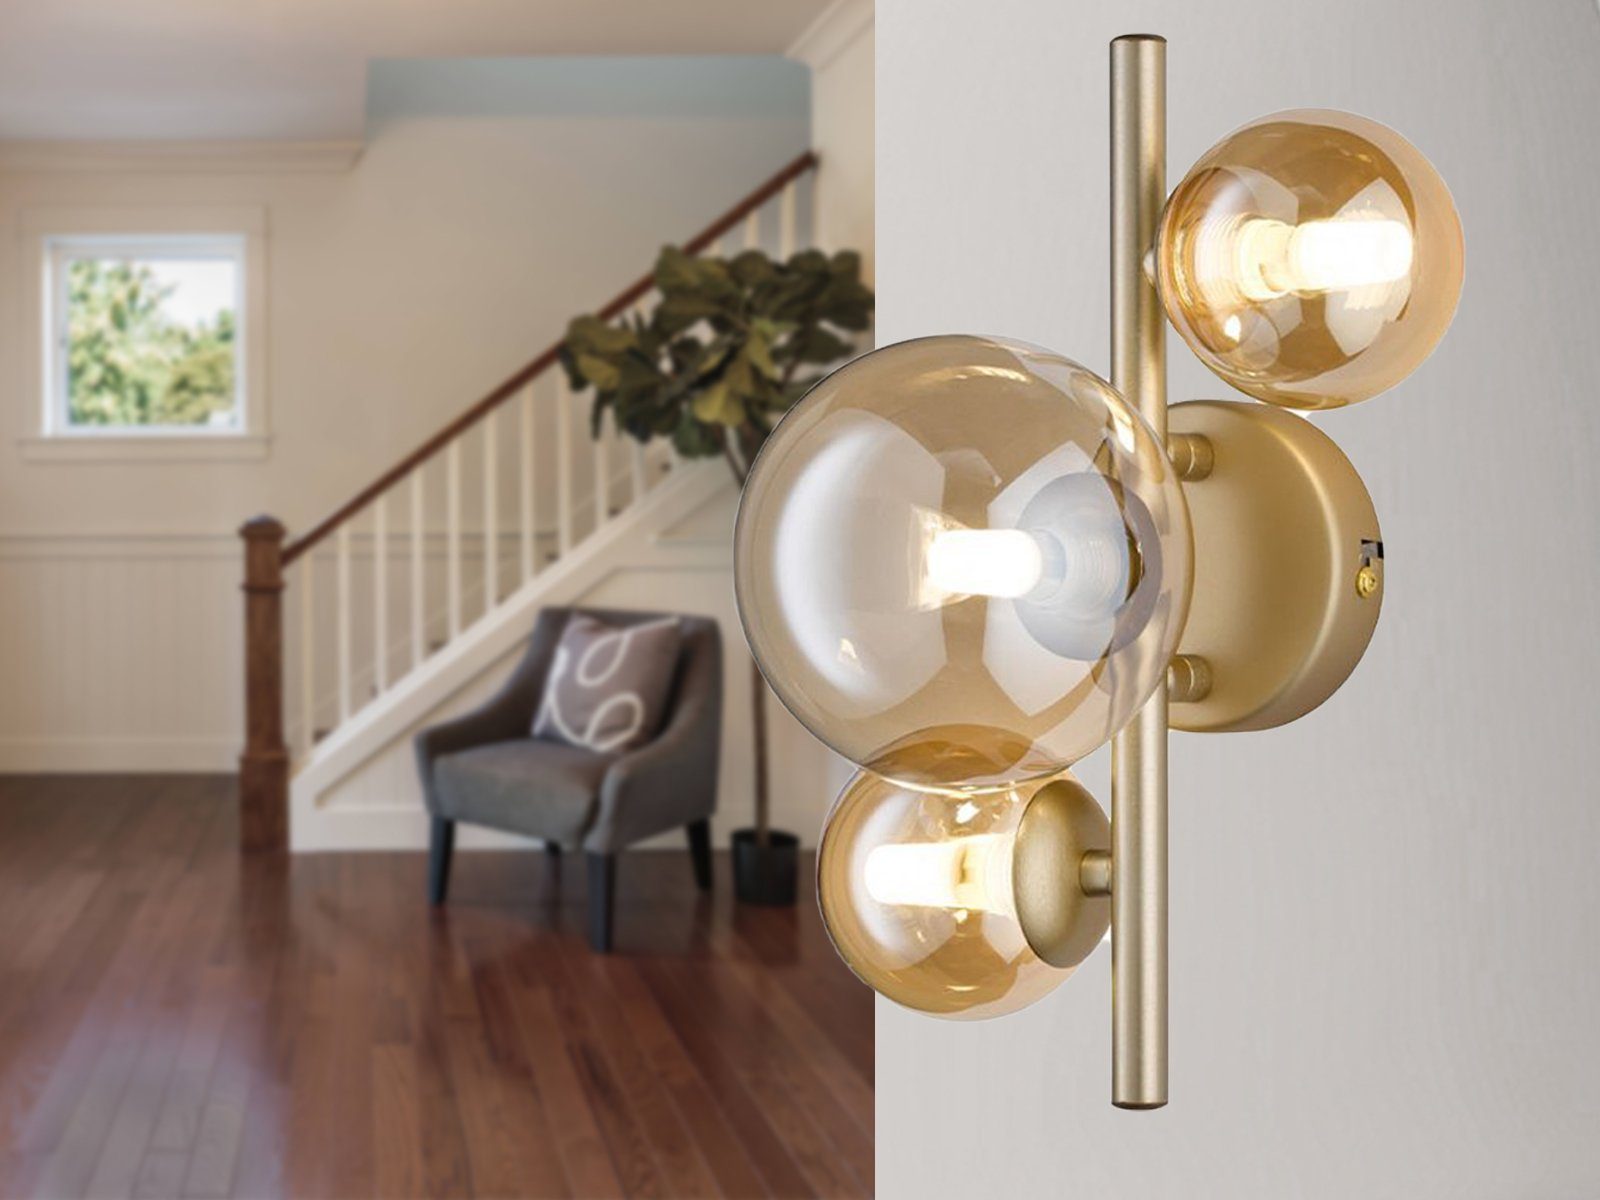 WOFI LED Wandleuchte, LED wechselbar, Warmweiß, innen, ausgefallene Bubble Lampe 4x Glas-kugel, Gold matt, Höhe 28cm Gold matt / Amberfarben